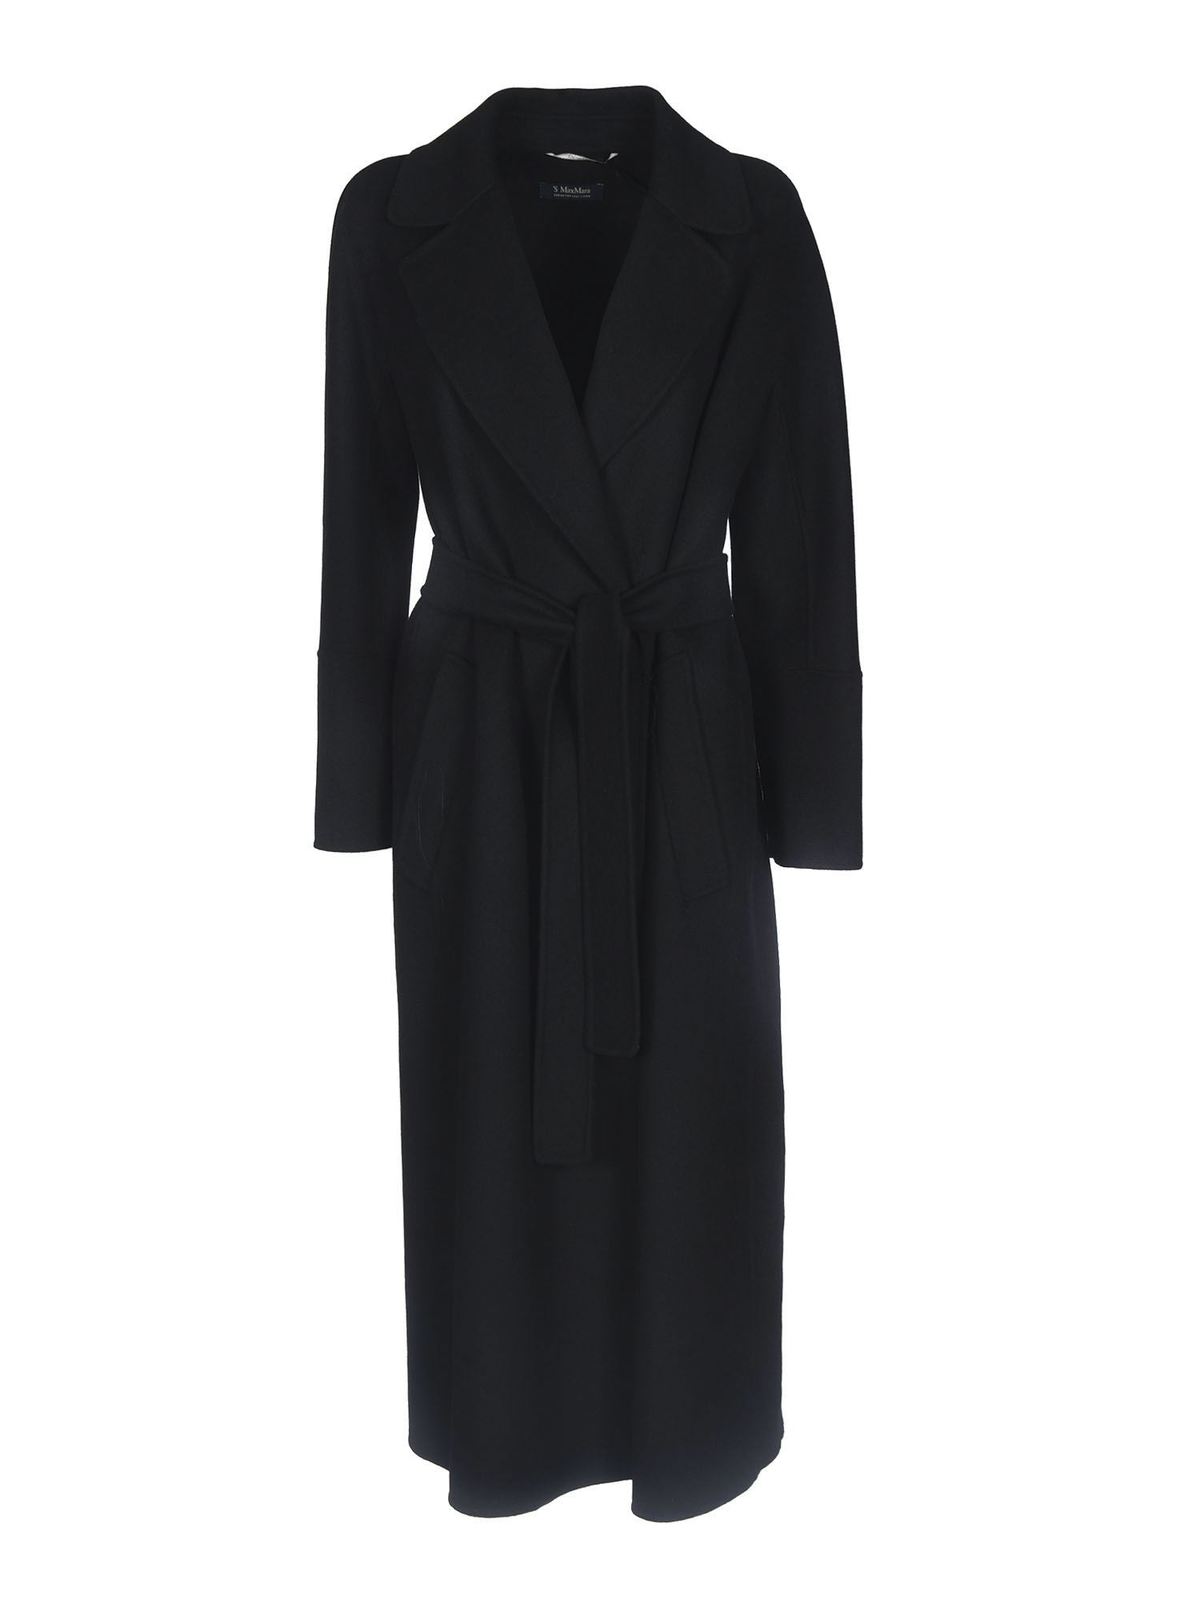 S Max Mara - Elisa coat in black - long coats - 90110311000013 | iKRIX.com